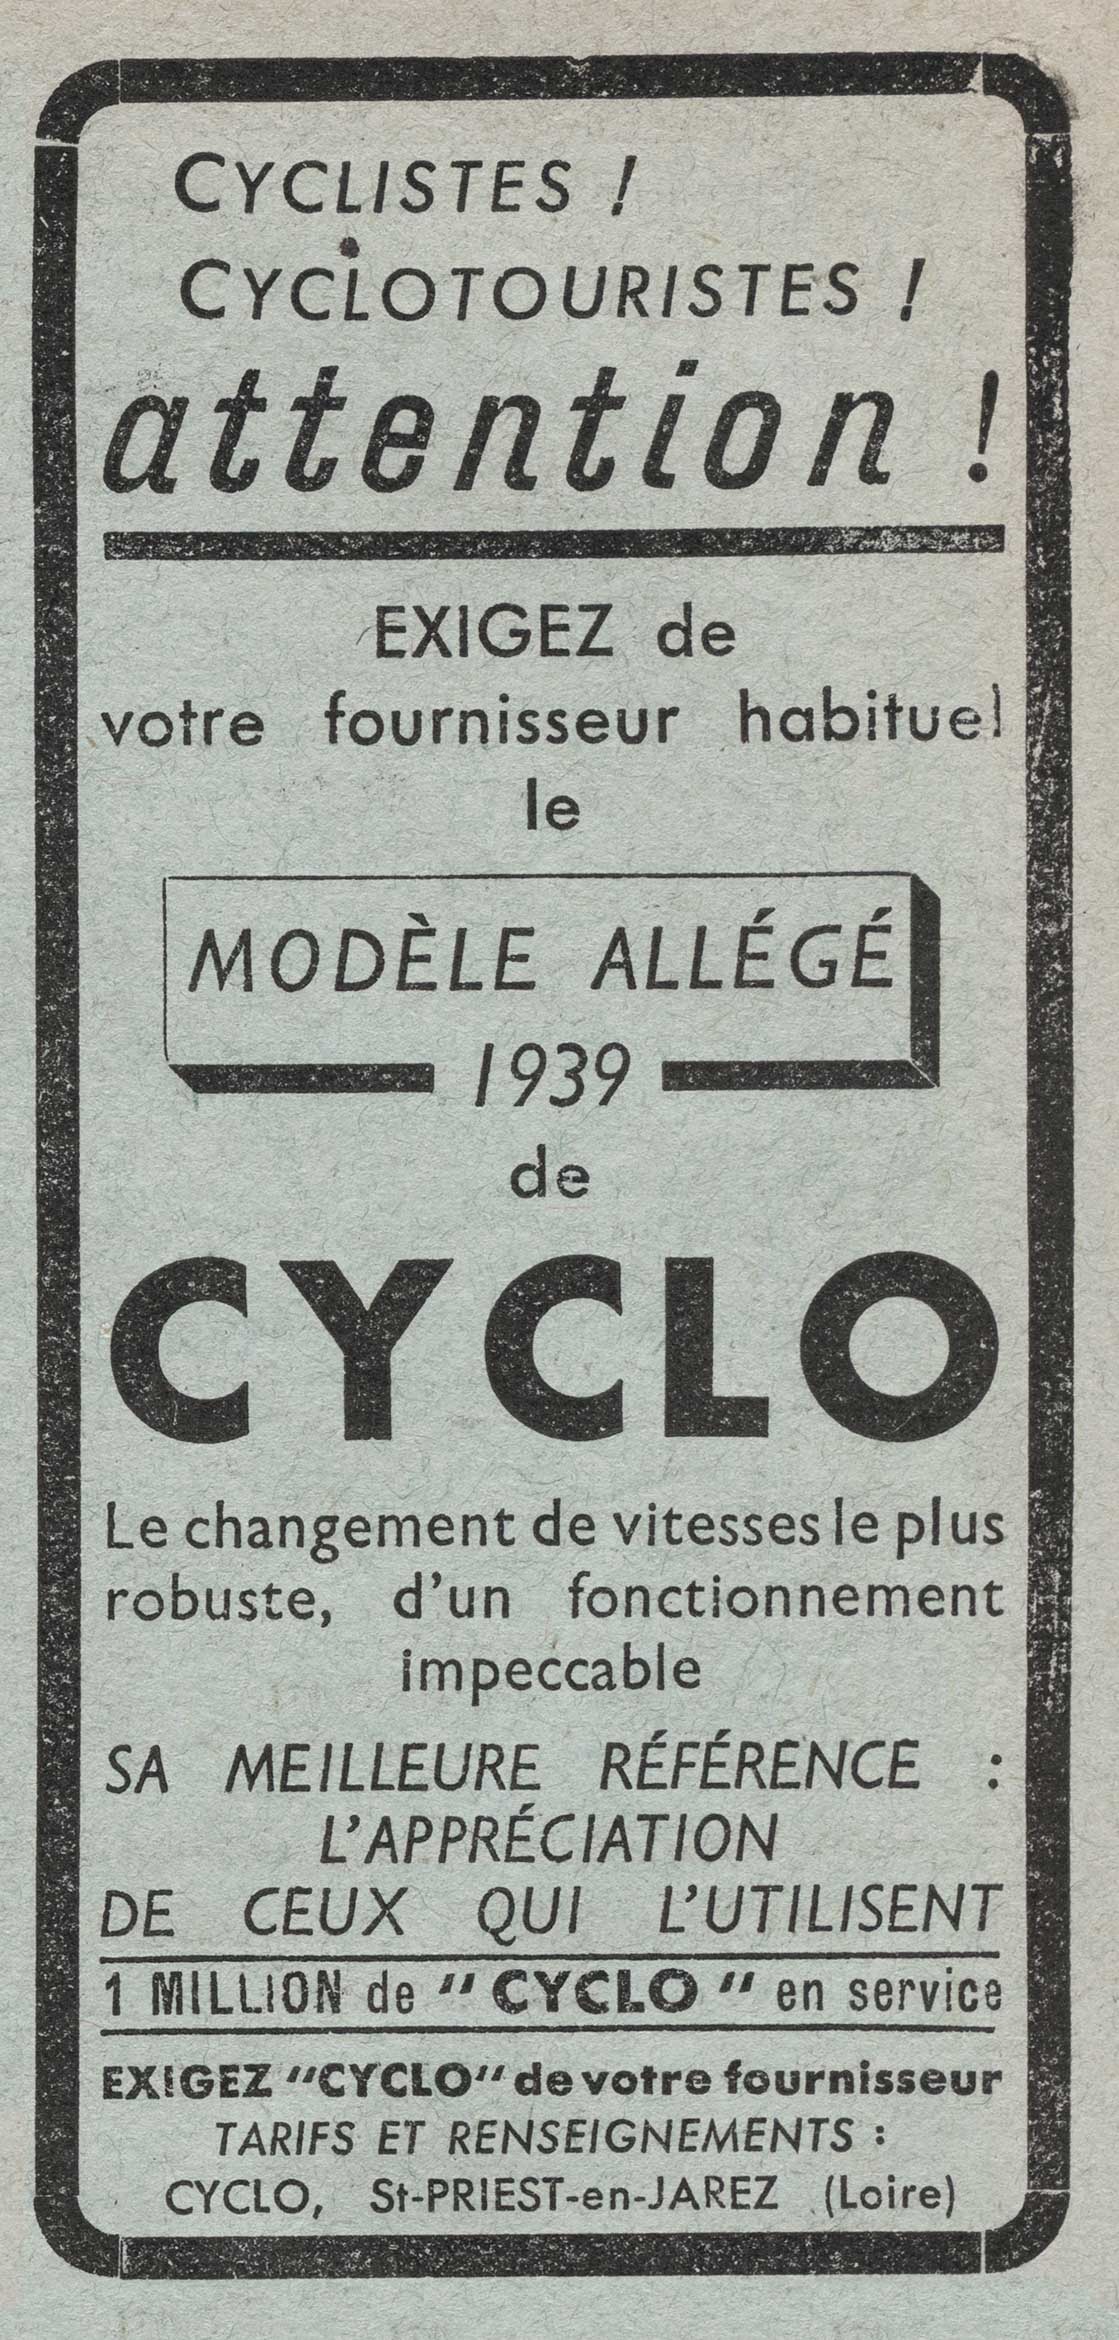 Le Chasseur Francais June 1939 Cyclo advert main image